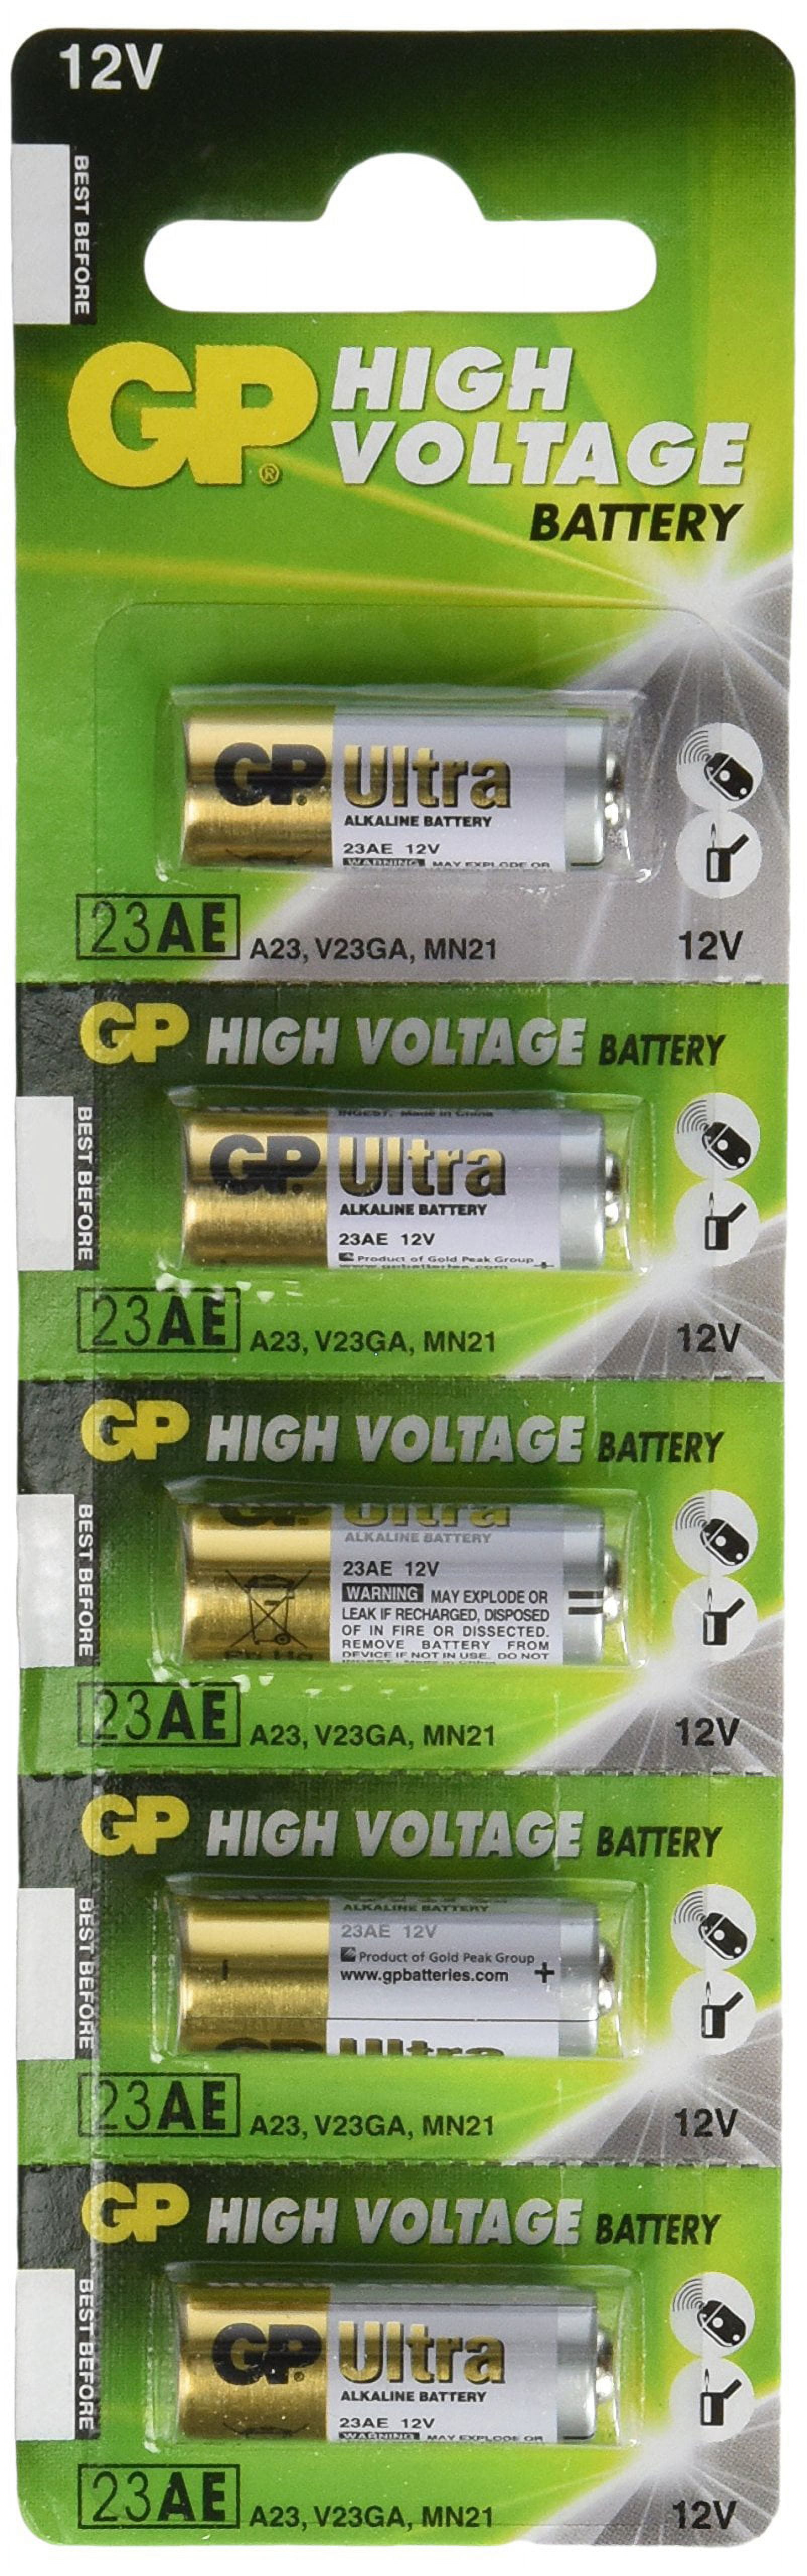 GP 23AE Battery - 23A, A23, V23GA, MN21, GP23A 12 Volt High Voltage